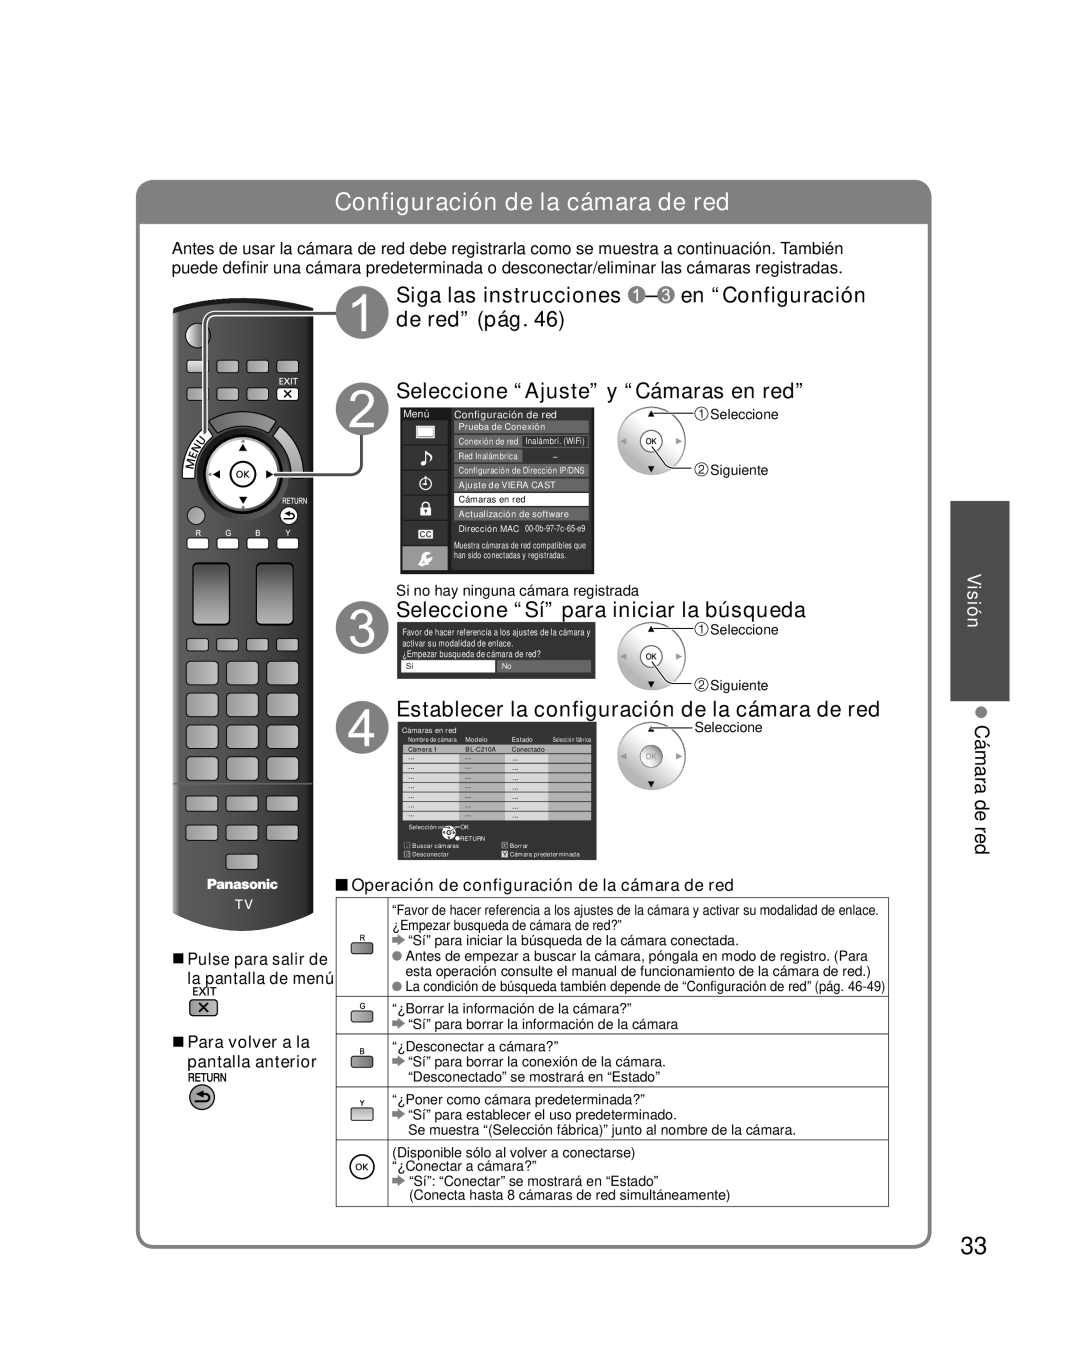 Panasonic TQB2AA0595 Configuración de la cámara de red, Siga las instrucciones - en “Configuración de red” pág, Visión 